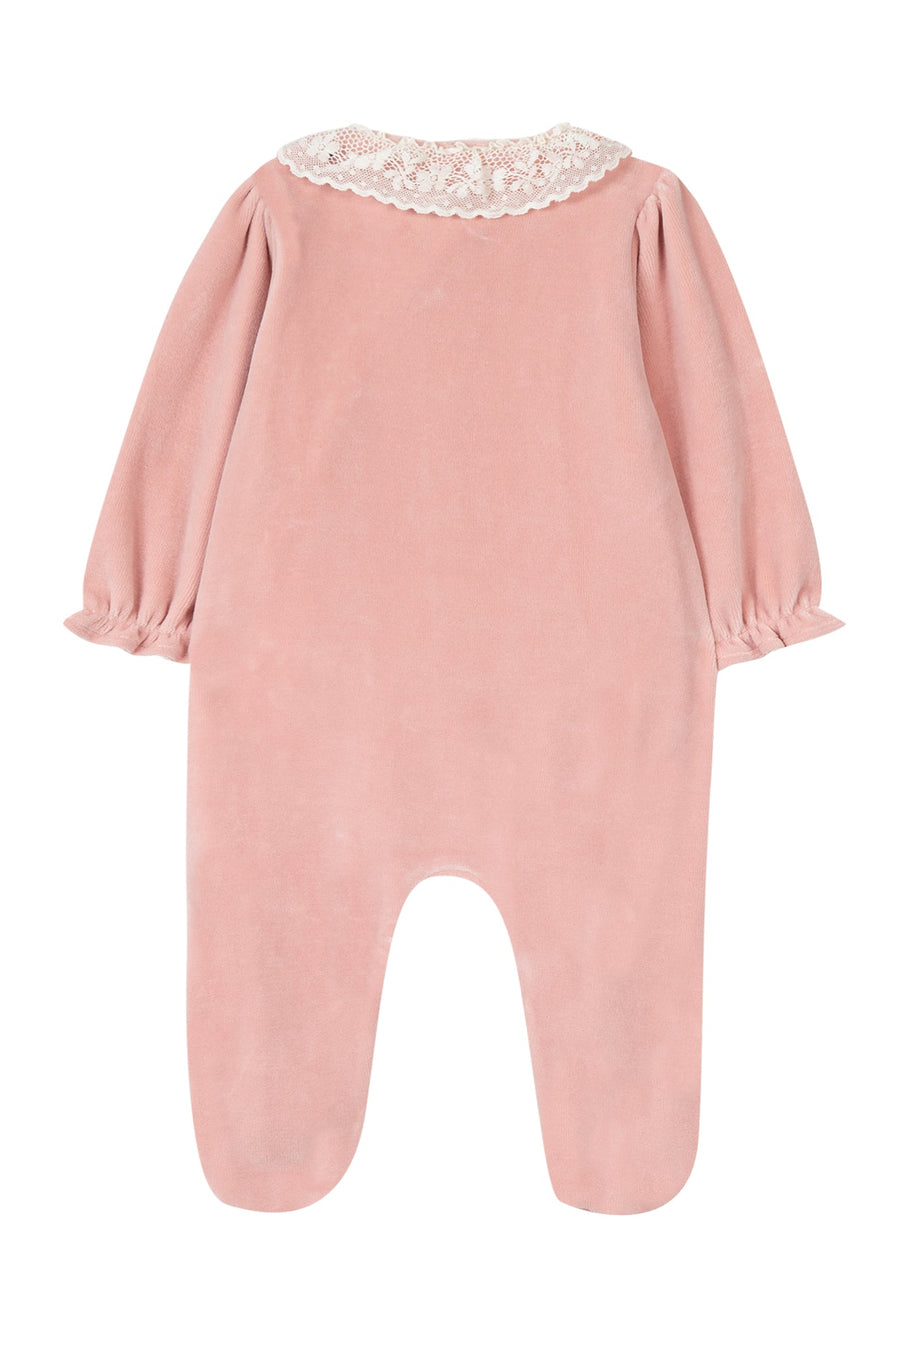 Bébé Fillette en pyjama avec Tétine rose, 7,4 x 4cm, petite